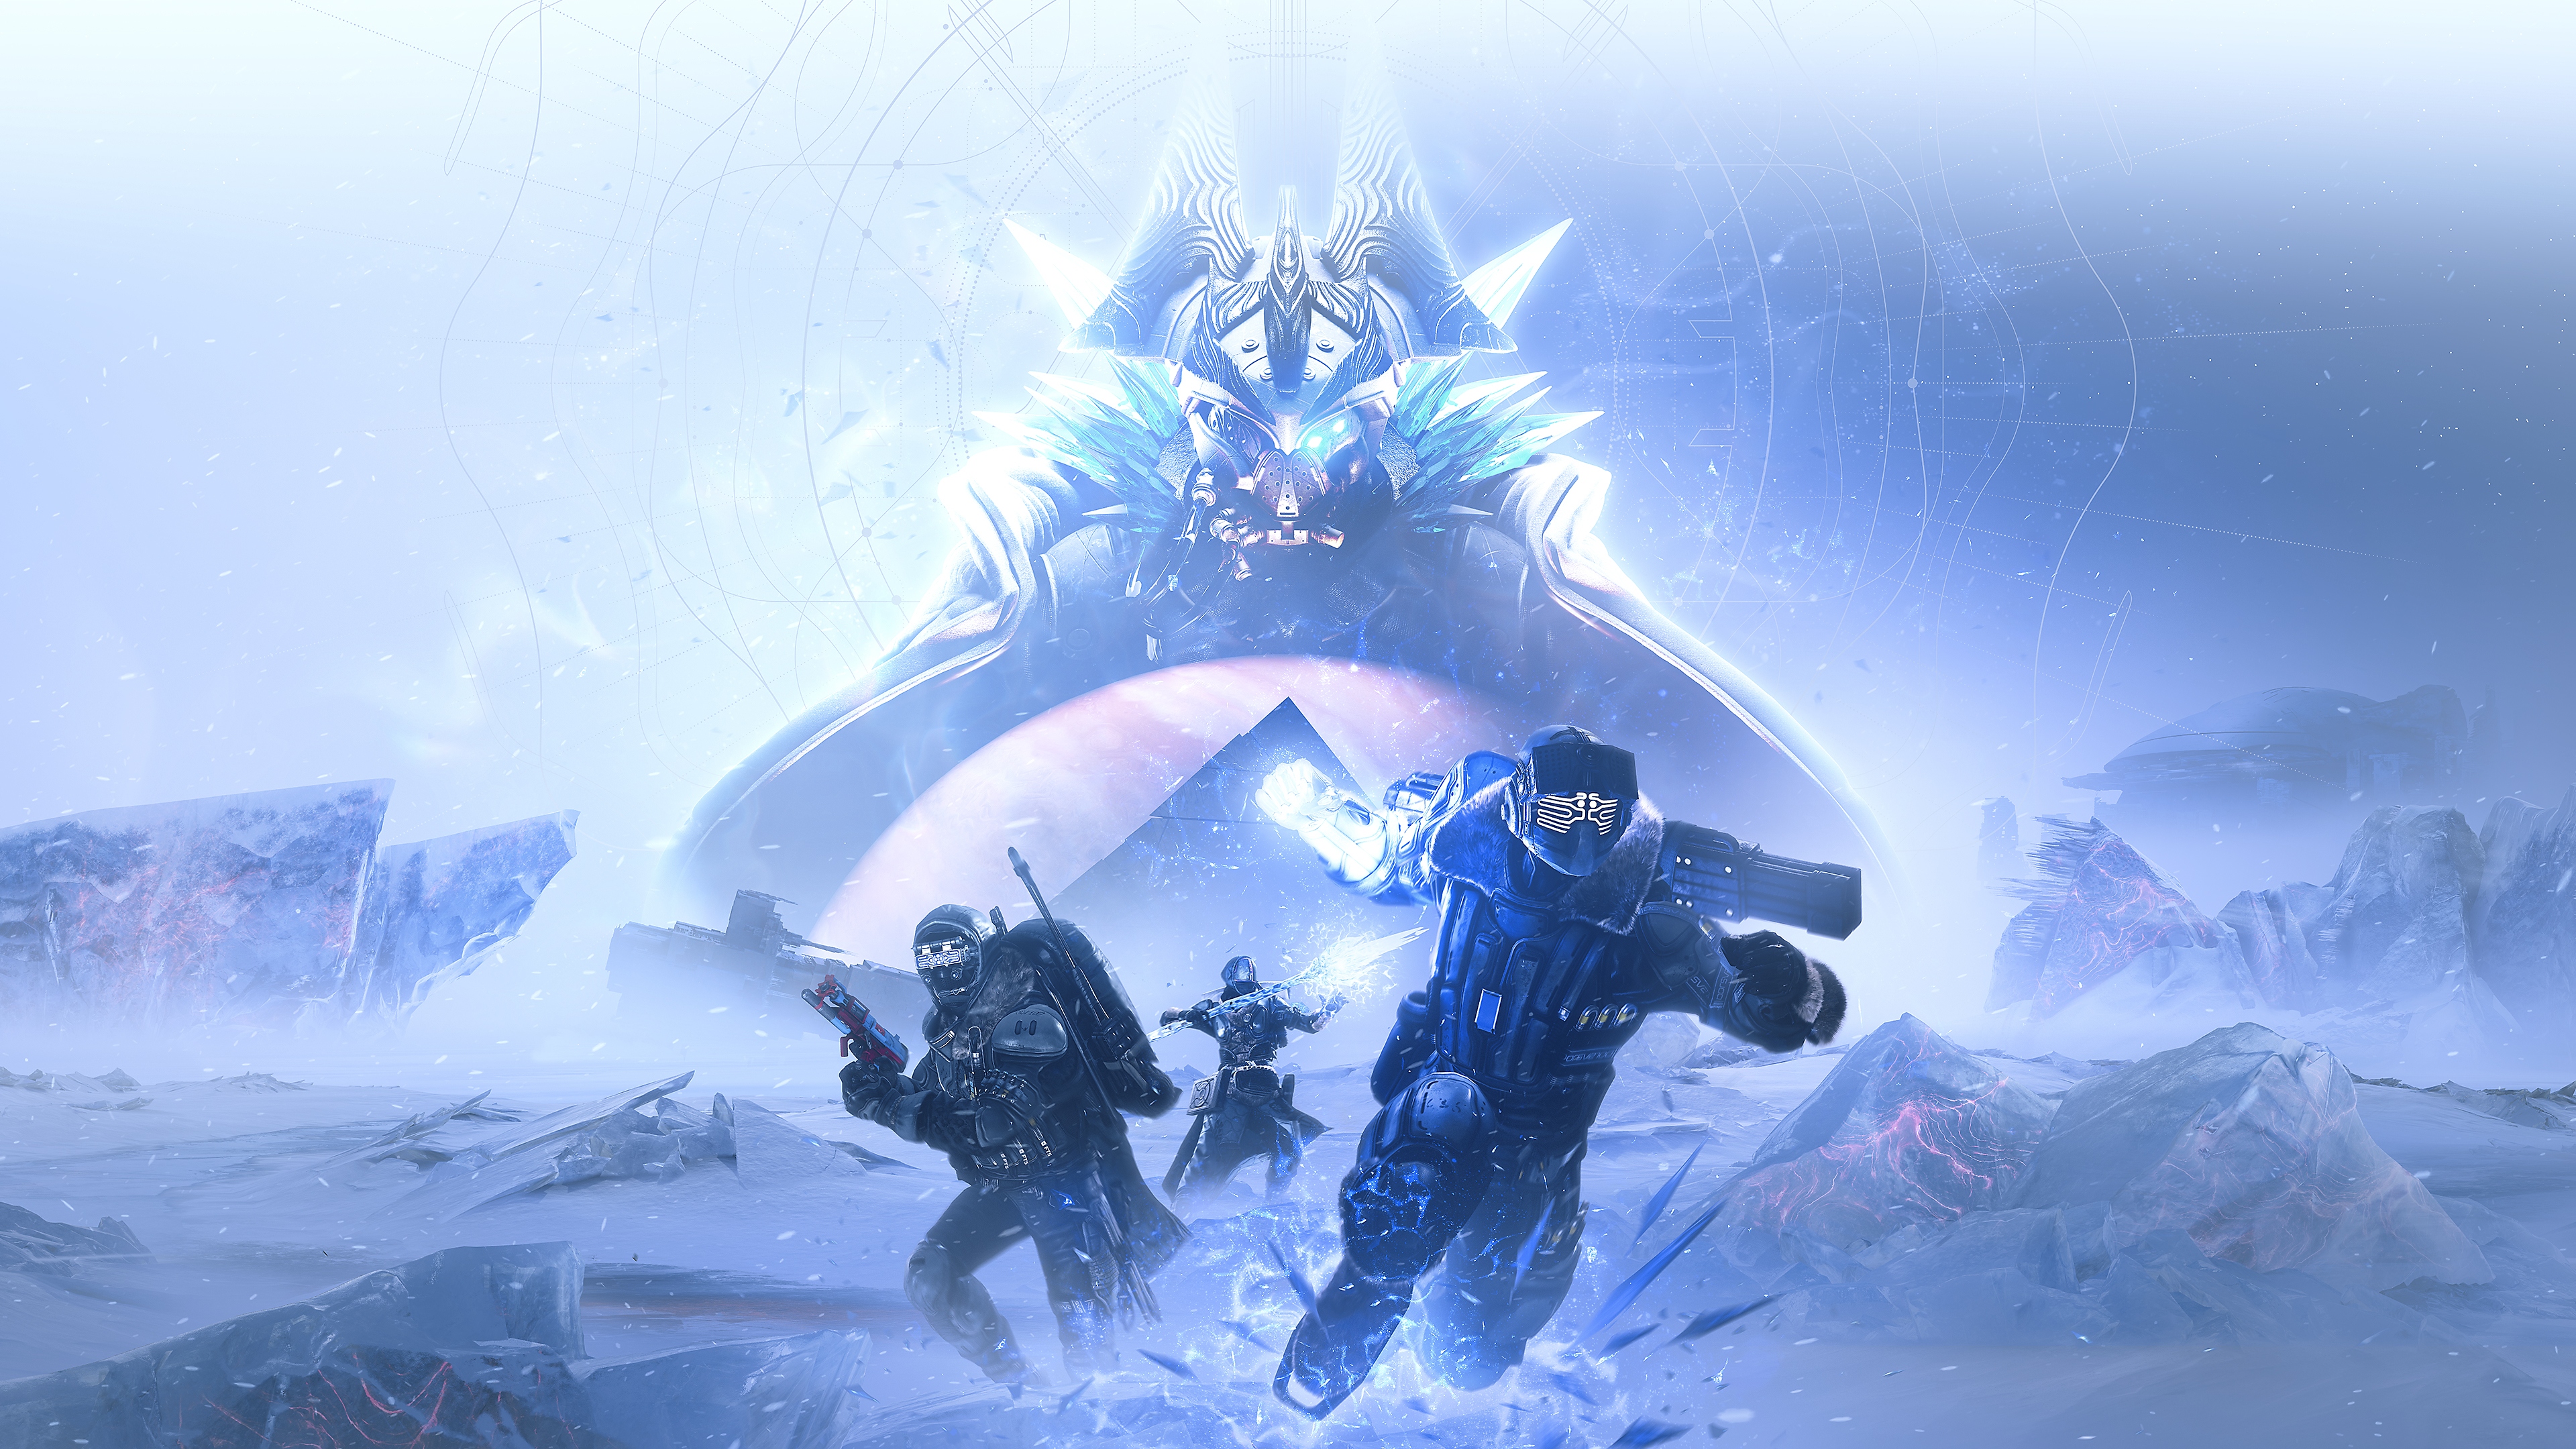 Destiny 2 - Beyond Light-beeld van de Fallen Kell of Darkness, Eramis